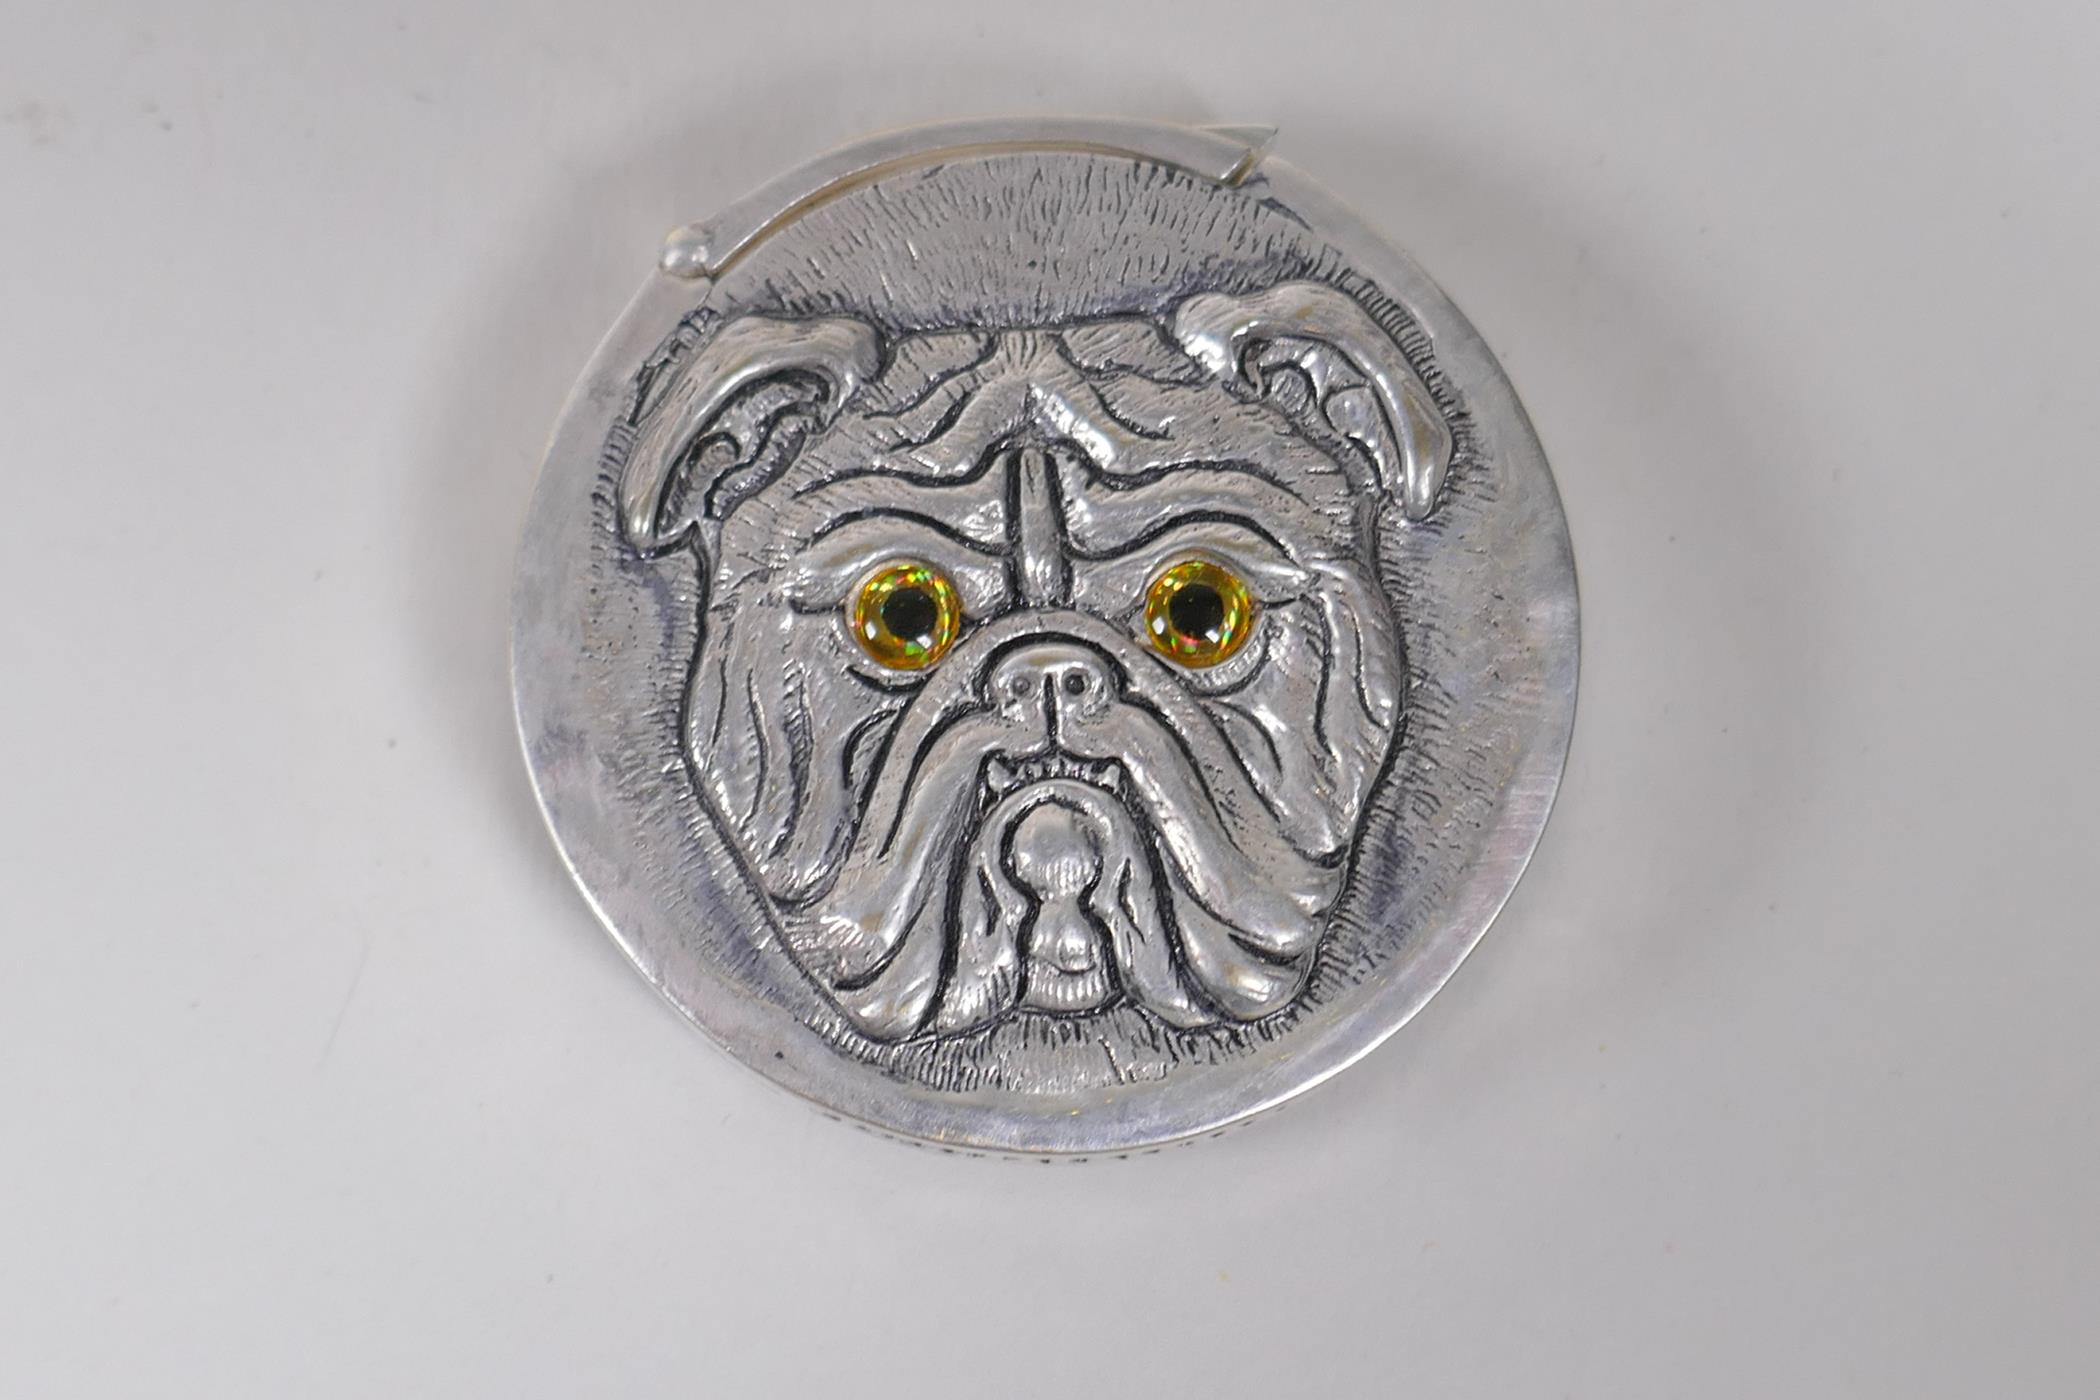 A silver plated bulldog vesta case, 4cm diameter